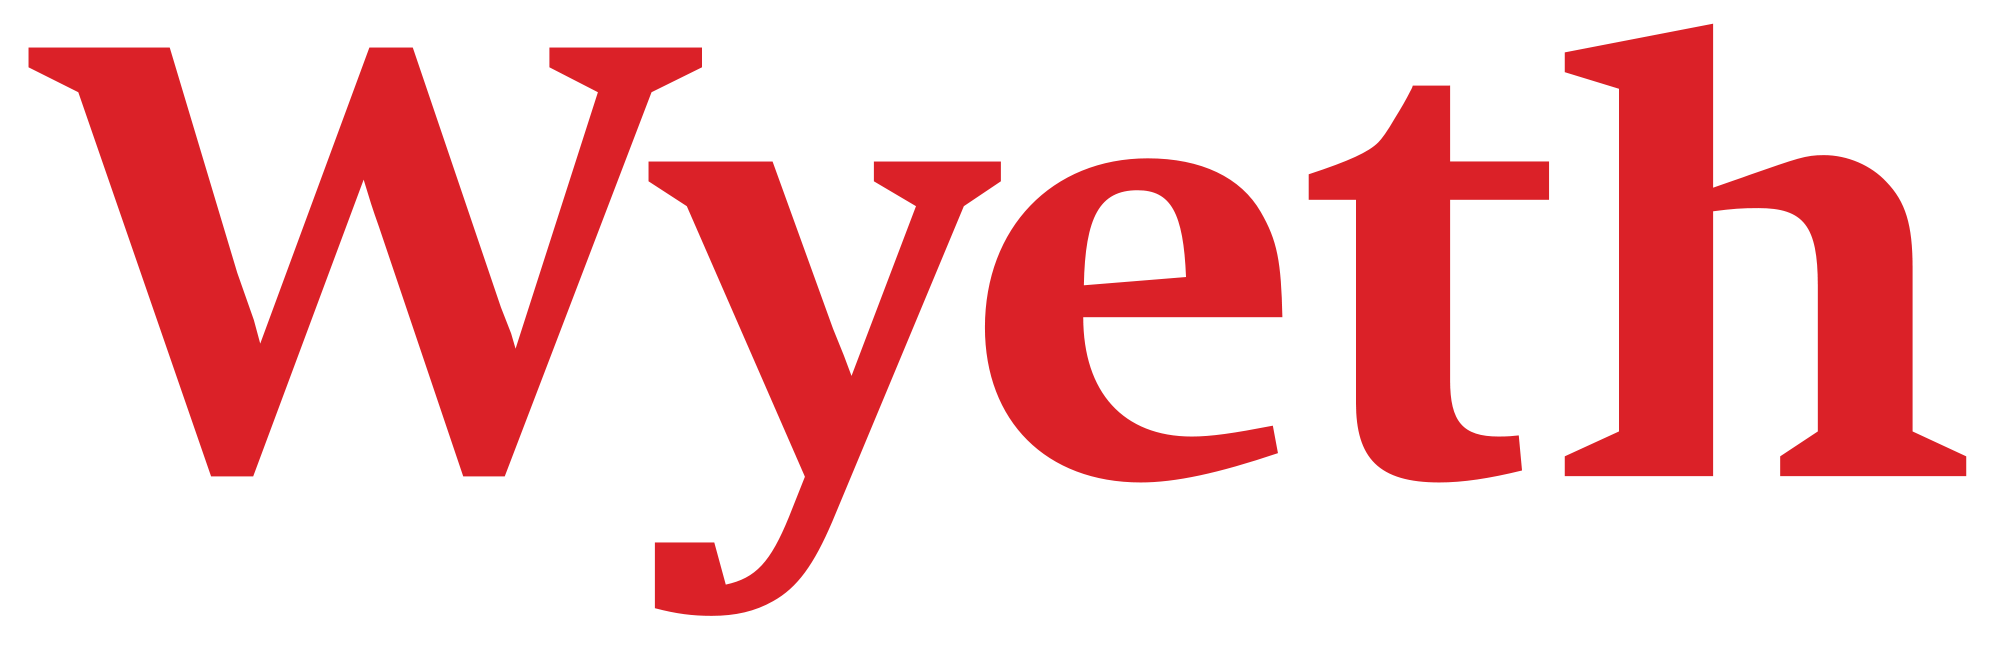 Wyeth Logo - Wyeth logo.svg